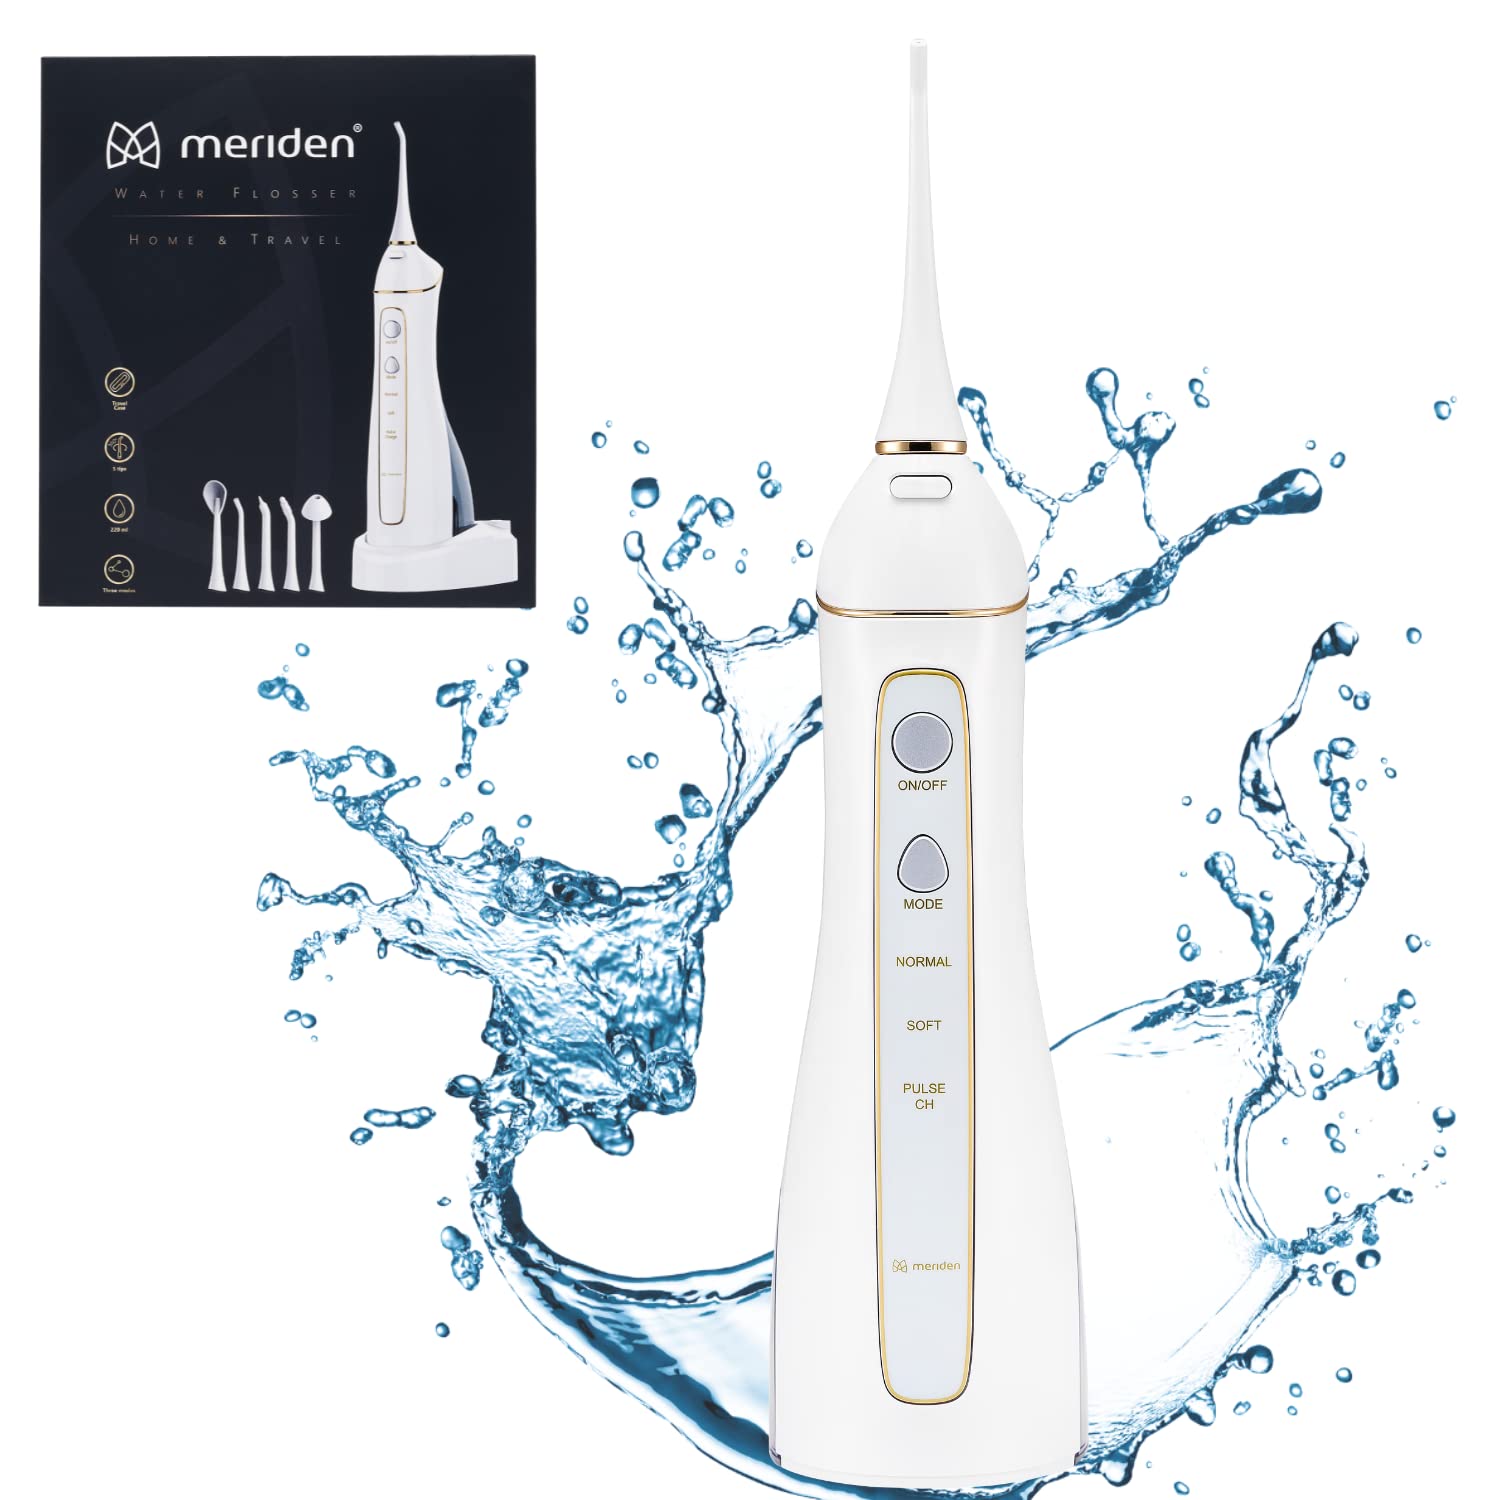 Meriden Munddusche Kabellos Irrigator Home & Travel Wasser Flosser für Zähne Elektrische Zahnreiniger mit 3 Modi 5 Ersatzdüsen Tragbar USB Reise-Etui